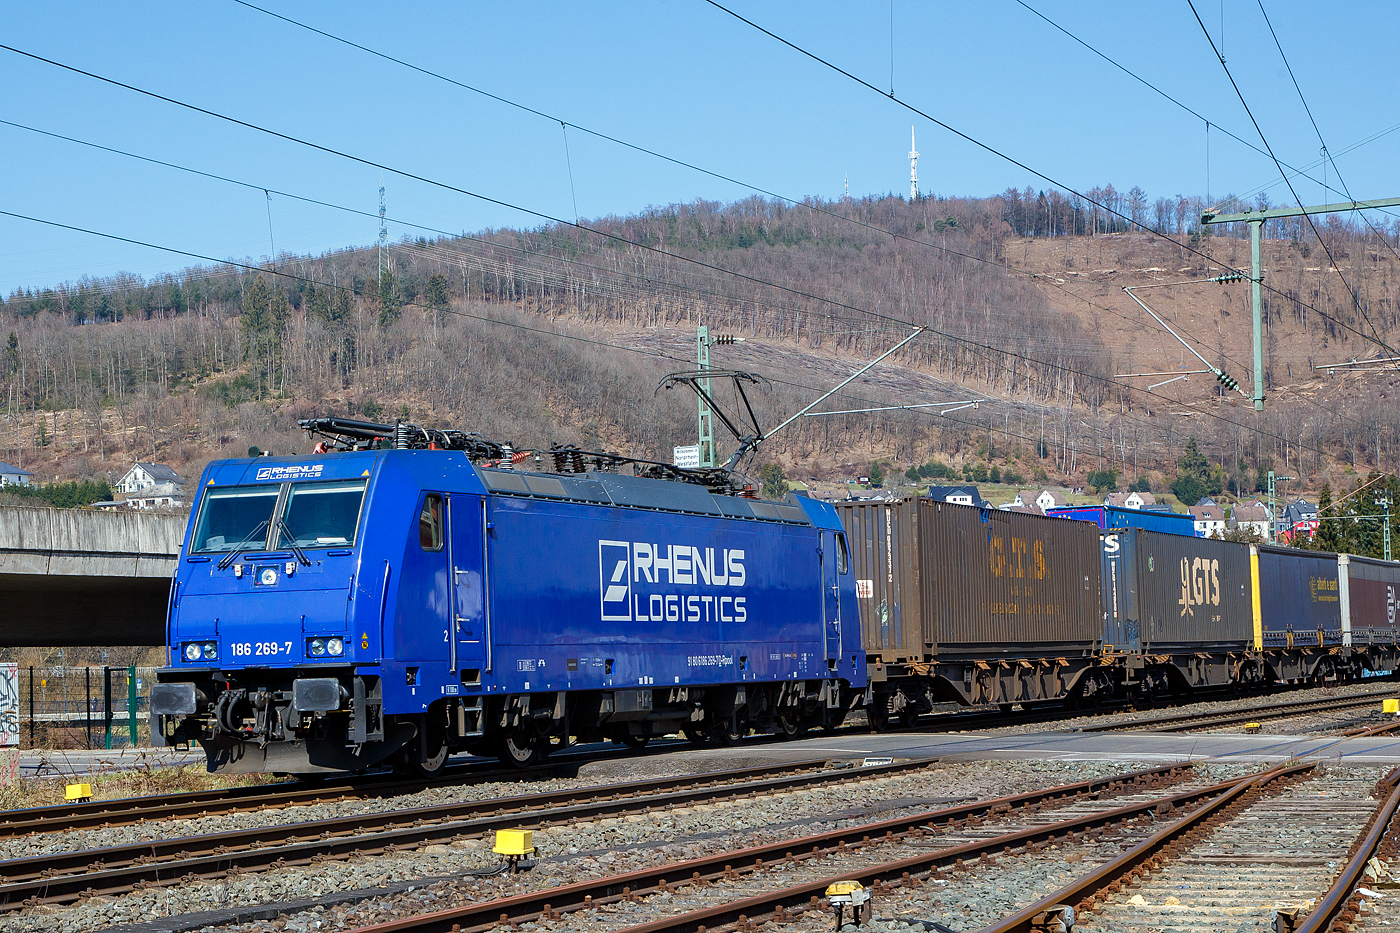 Die an die Rhenus Rail Logistics GmbH vermietete Railpool 186 269-7 (91 80 6186 269-7 D-Rpool) fährt am 24.03.2021, mit einem mit einem GTS - Container-Zug, auf der Siegstrecke (KBS 460) durch Niederschelden in Richtung Köln. 

Die Bombardier TRAXX F140 MS2E wurde 2017 von Bombardier in Kassel unter der Fabriknummer 35522 gebaut und an die Railpool ausgeliefert. Die Multisystemlokomotive hat die Zulassungen bzw. besitzt die Länderpakete für Deutschland, Österreich, Belgien, Niederlande, Tschechien, Slowakei und Ungarn (D/A/B/NL/CZ/SK/H).
